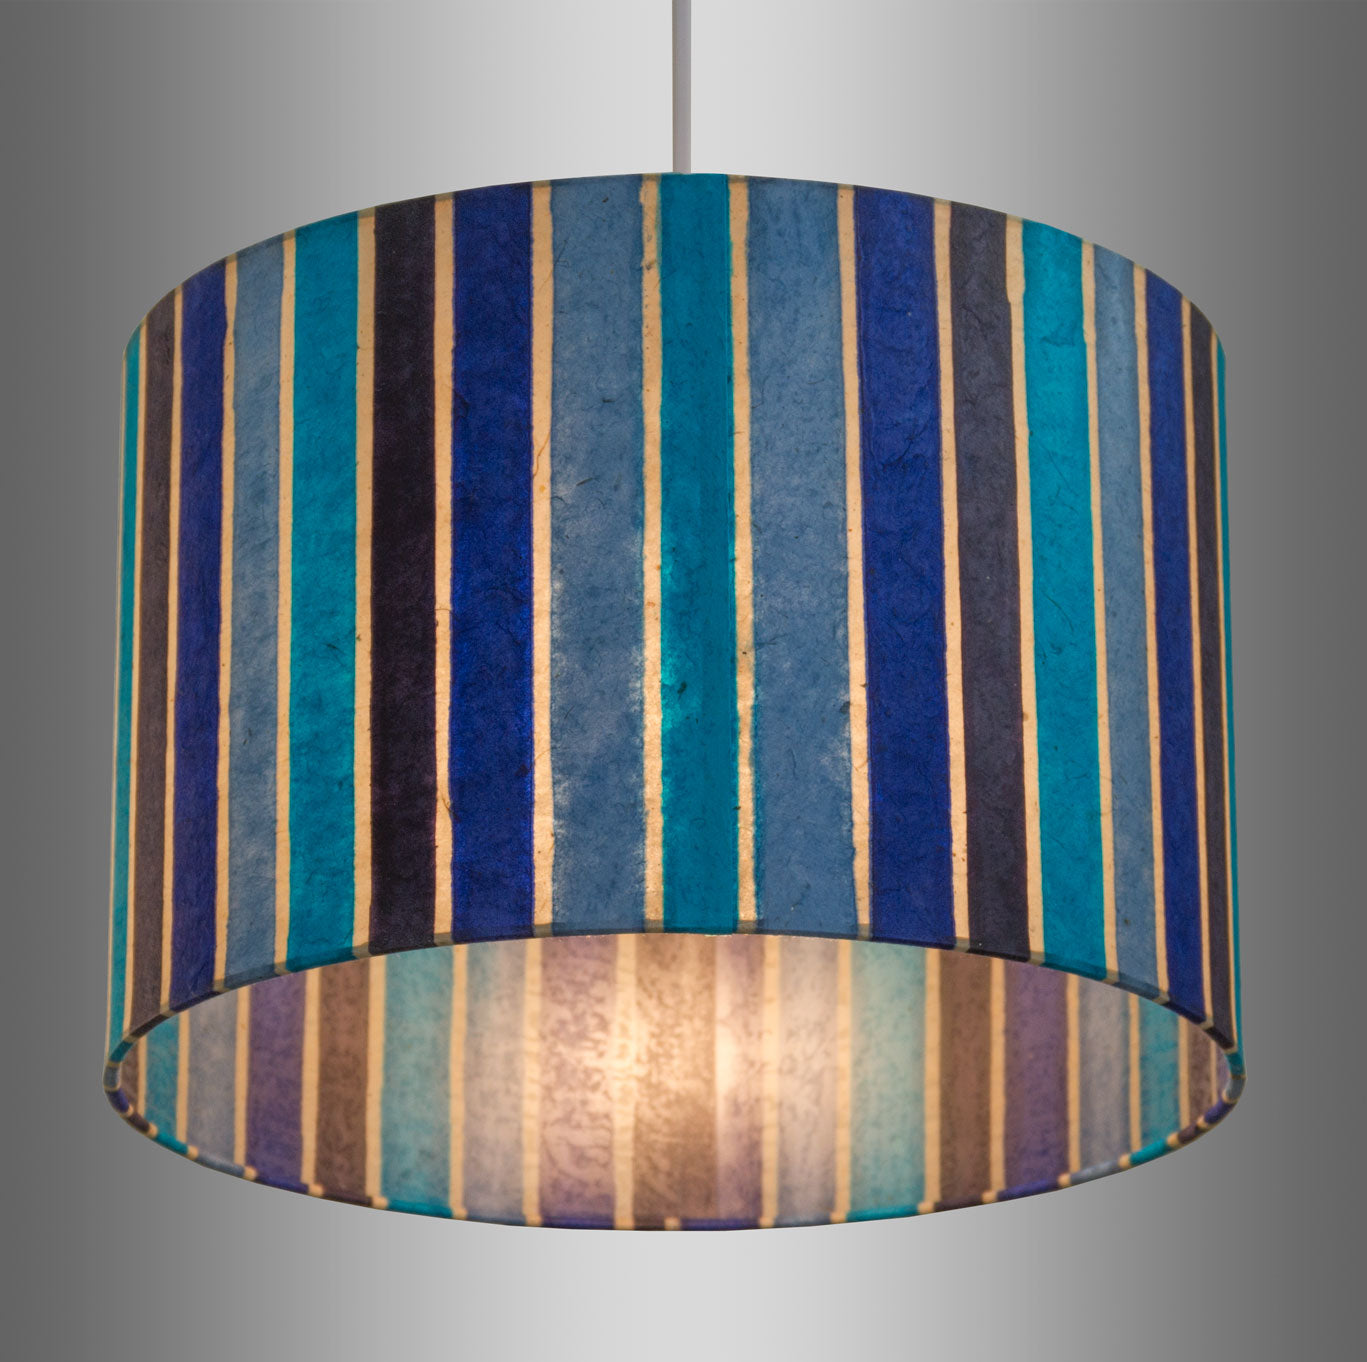 Drum Lamp Shade - P05 - Batik Stripes Blue, 50cm(d) x 20cm(h)